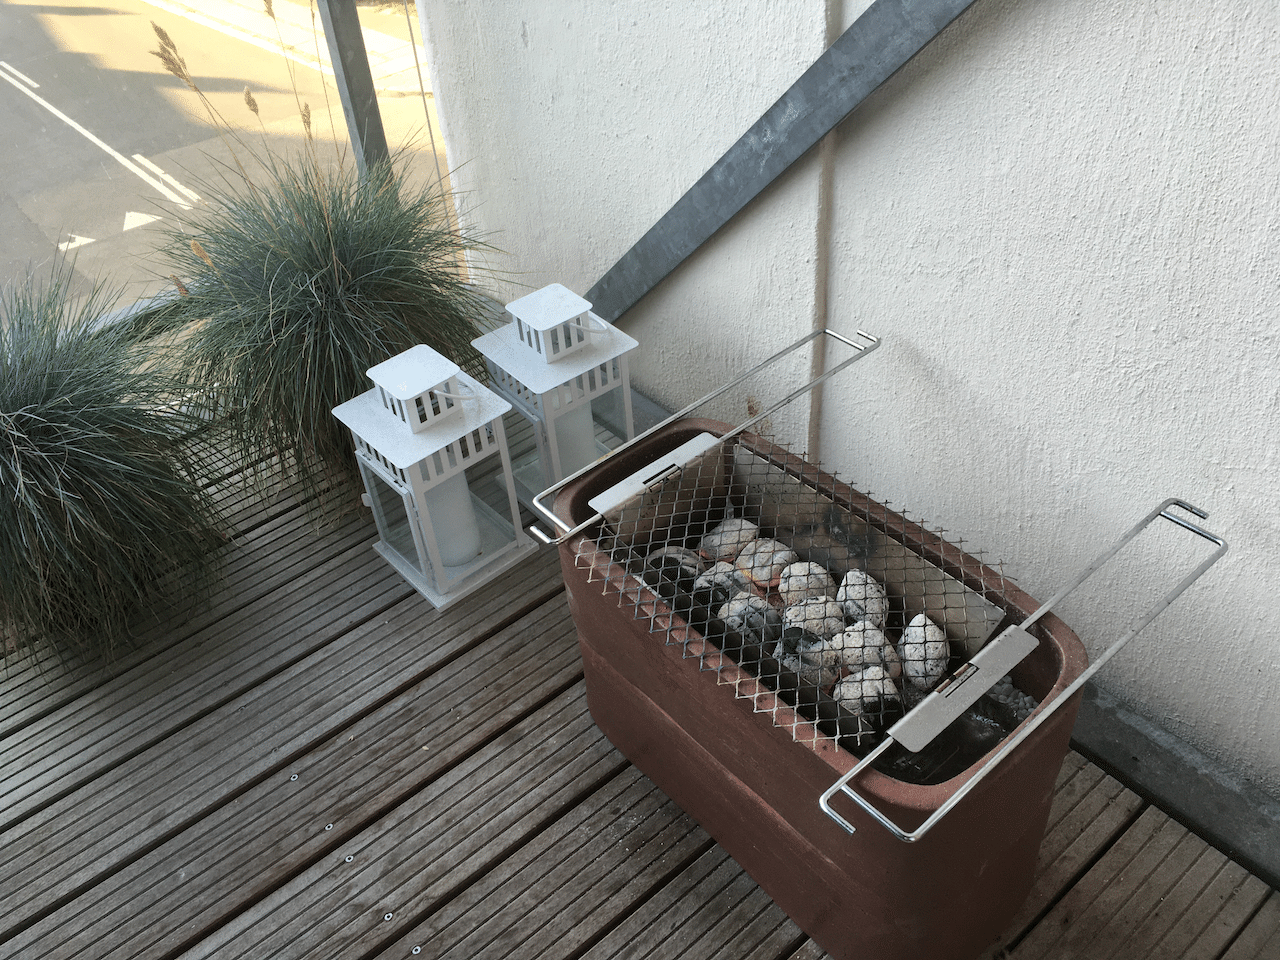 植木鉢で自作したグリルで焼き鳥bbq ひぐち デンマークで仕事中 Note